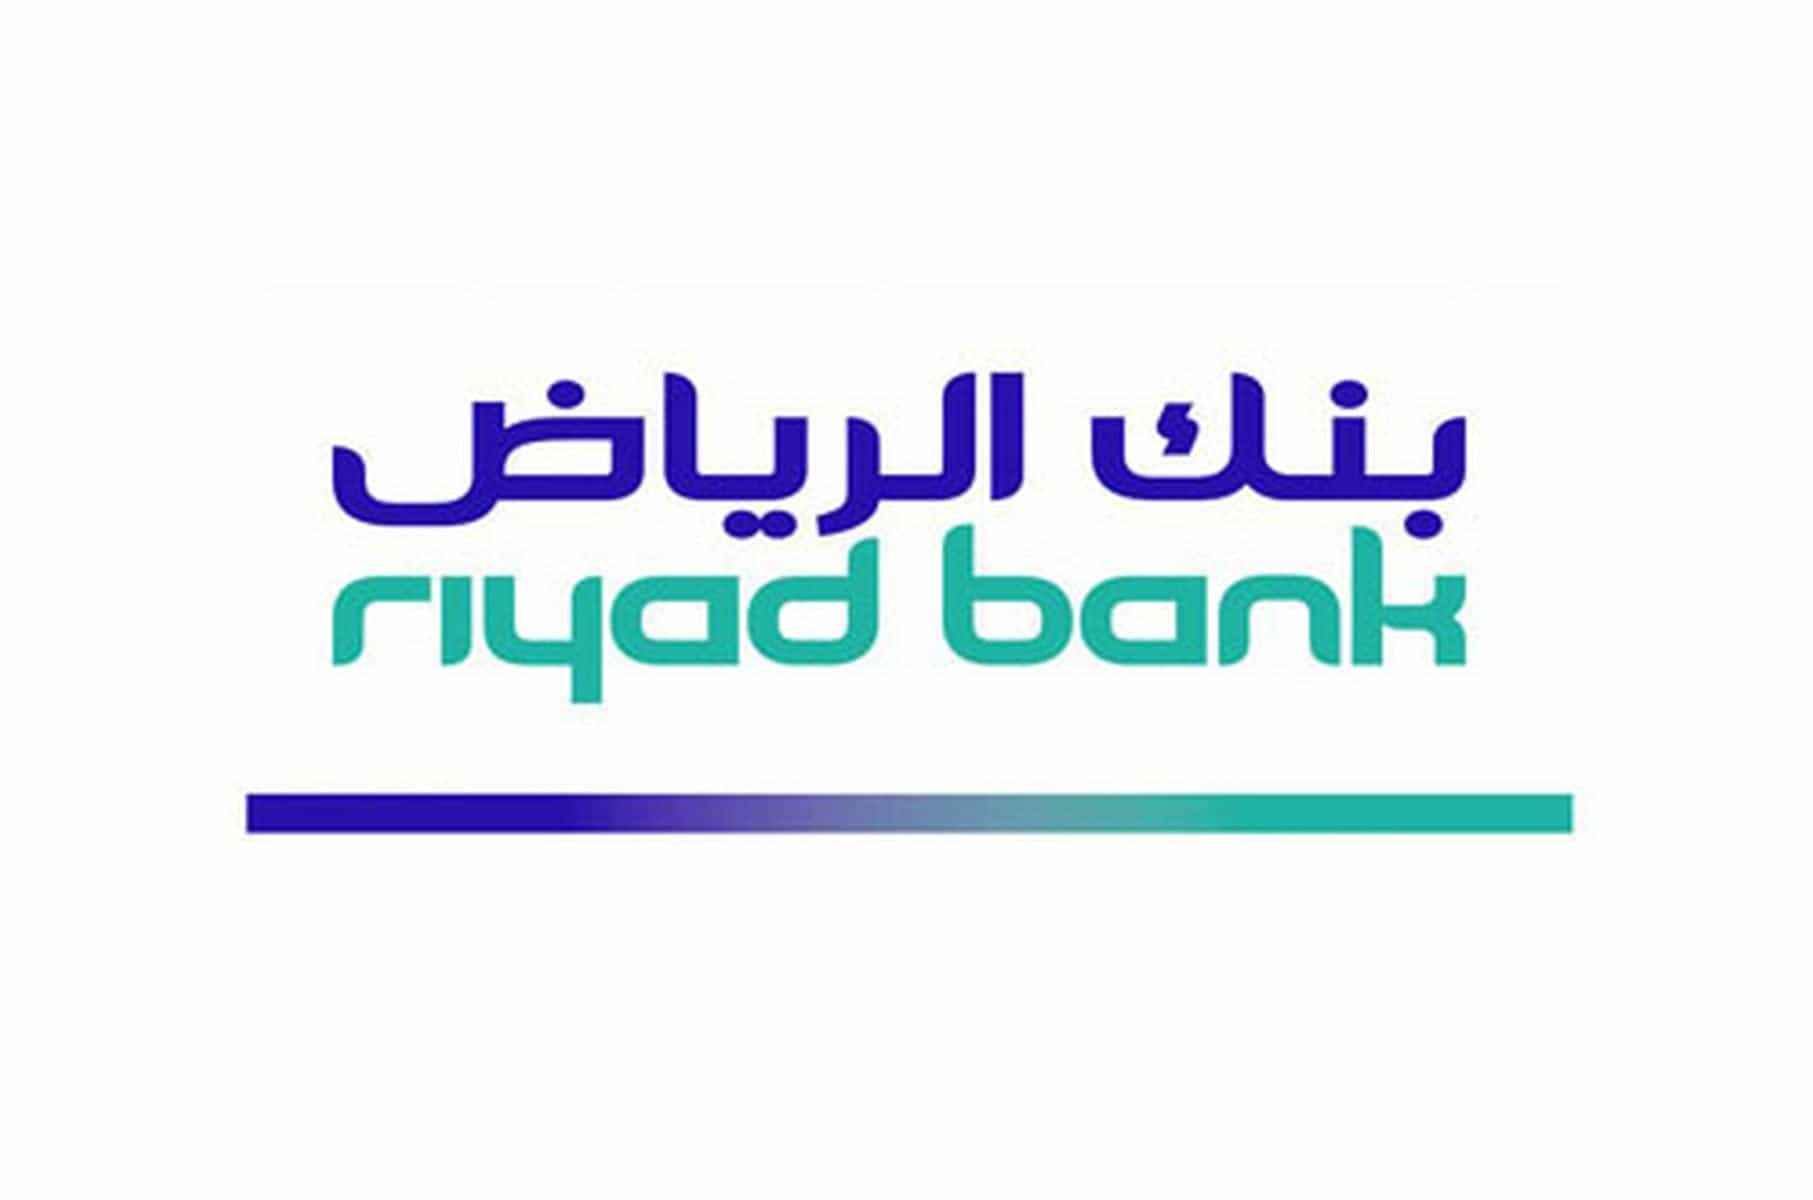 بنك الرياض تمويل شخصي بدون تحويل الراتب يصل الى 300.000 ريال وفترة سداد 5 سنوات